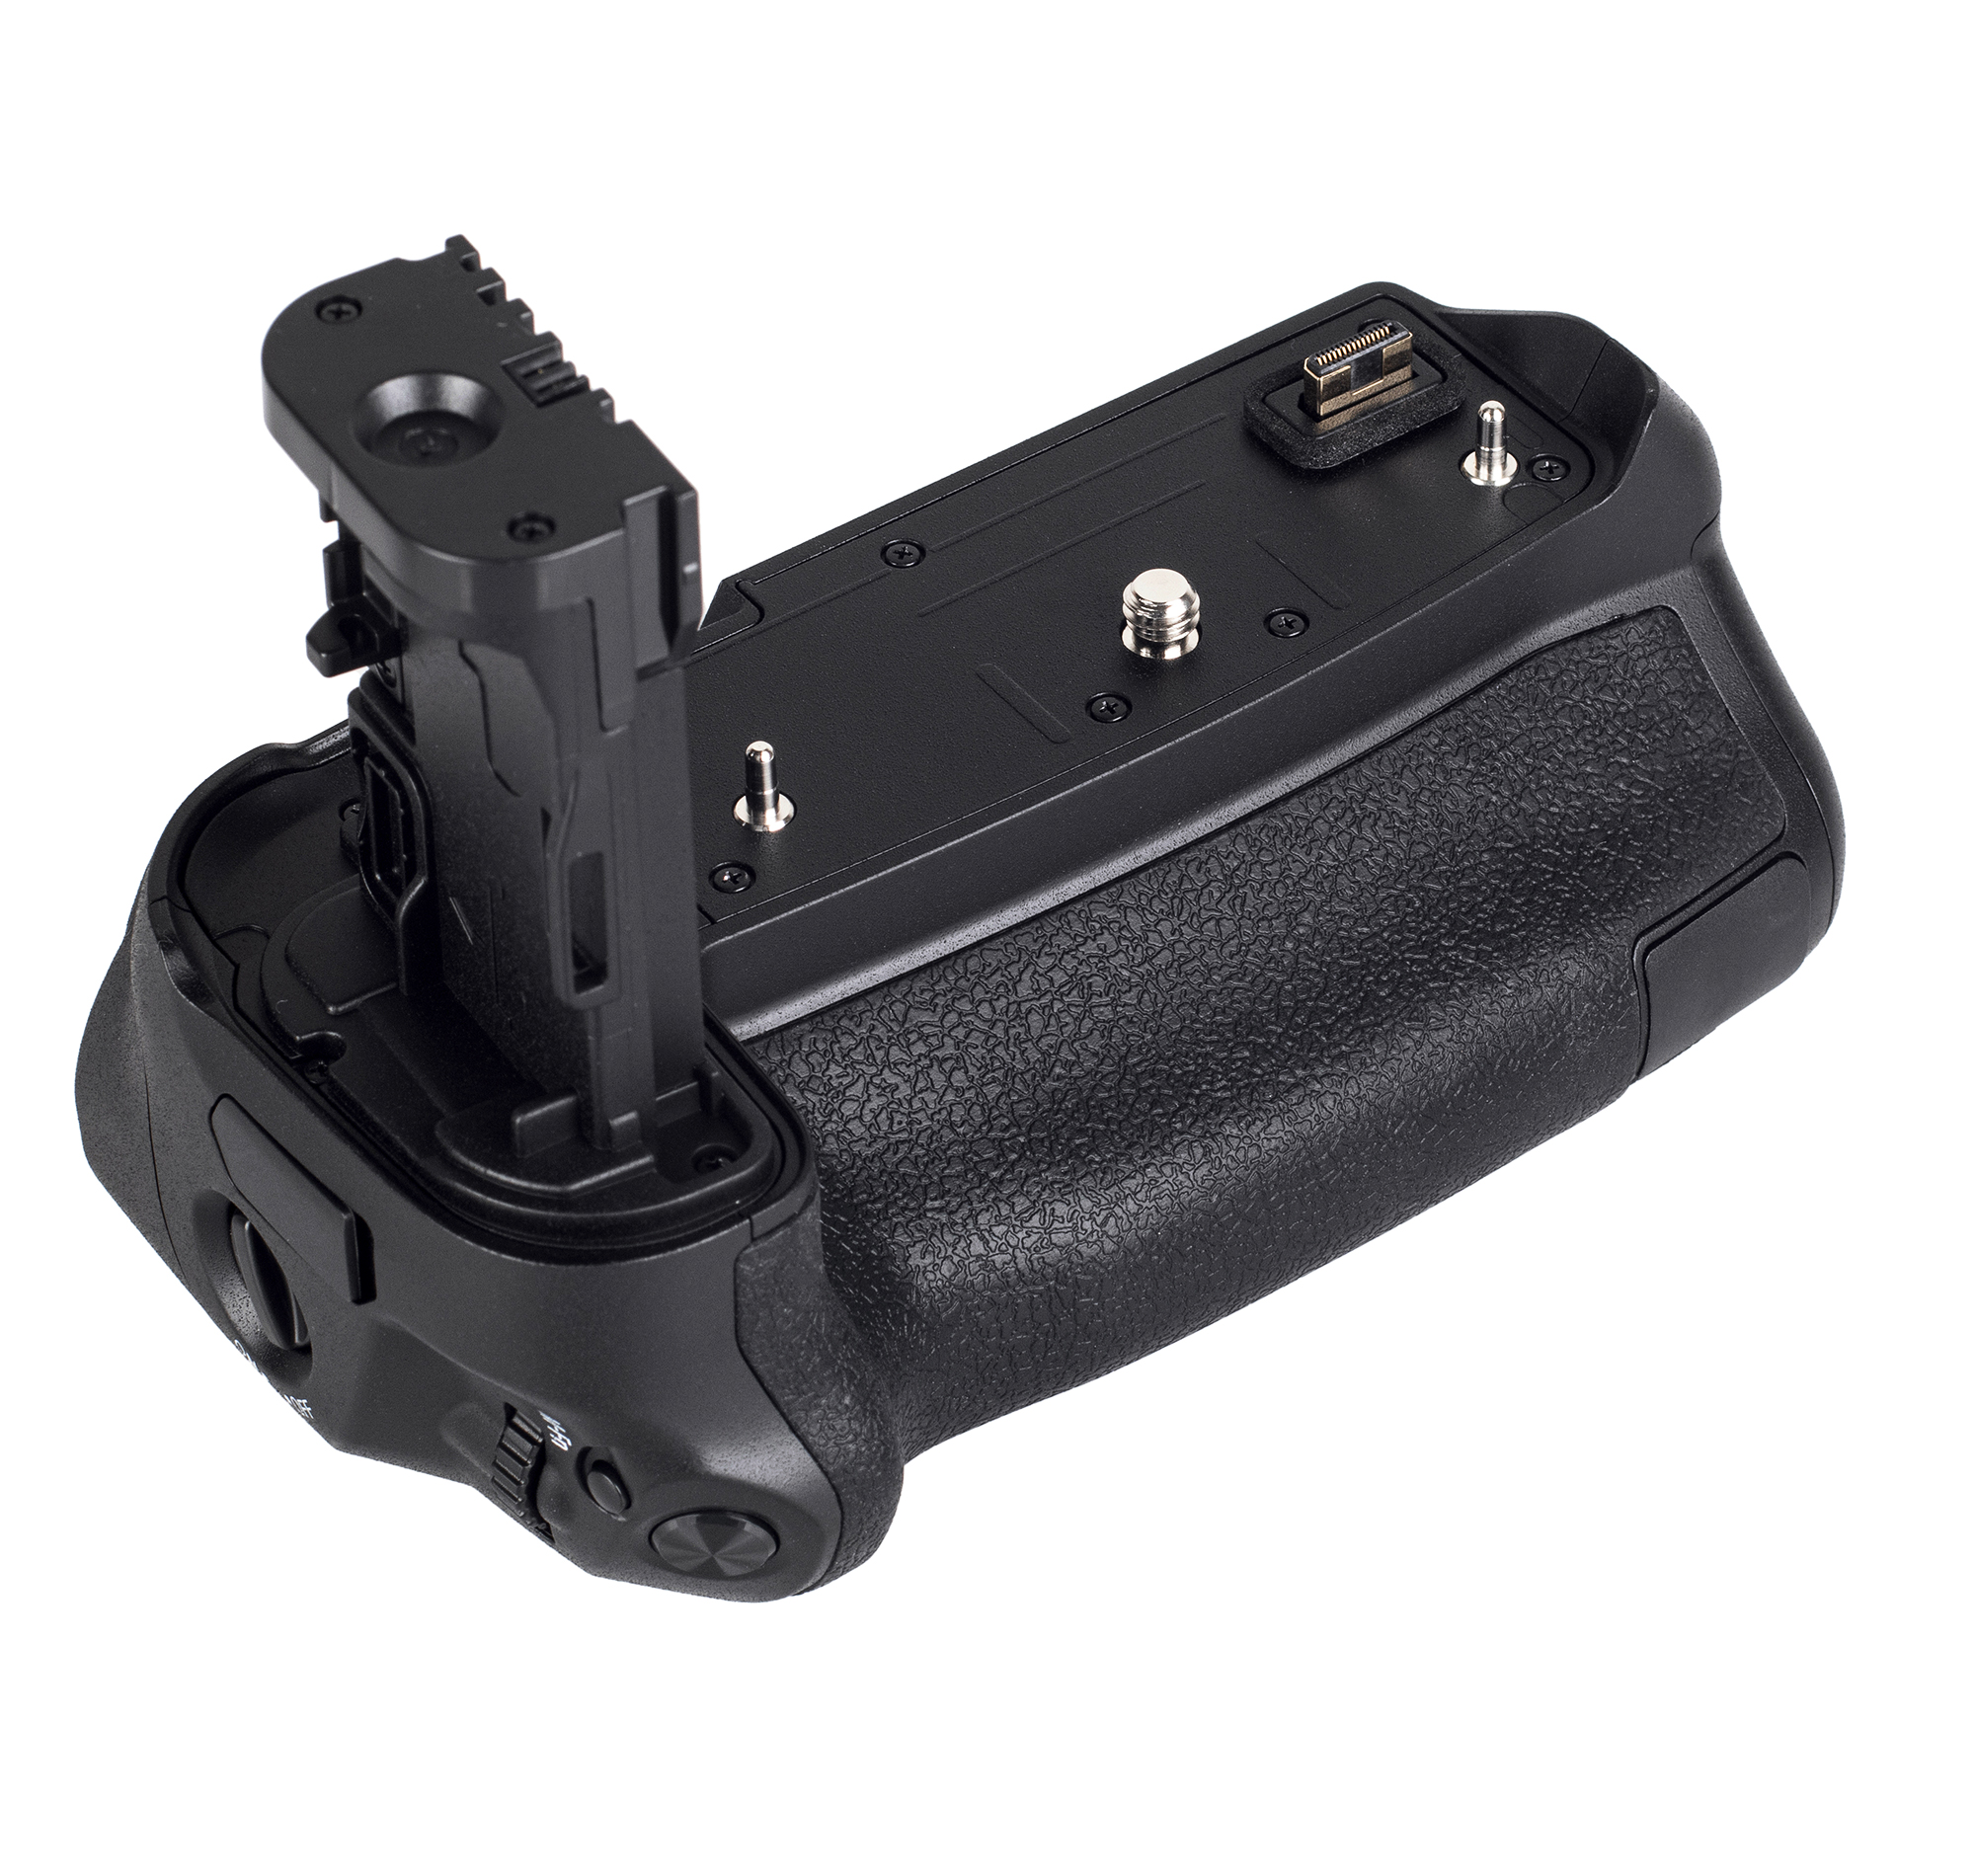 Black Ladefunktion + Batteriegriff R Netzteil, Handgriff USB-C mit Batteriegriff, EOS BG-E22 Ra AYEX kompakter Canon